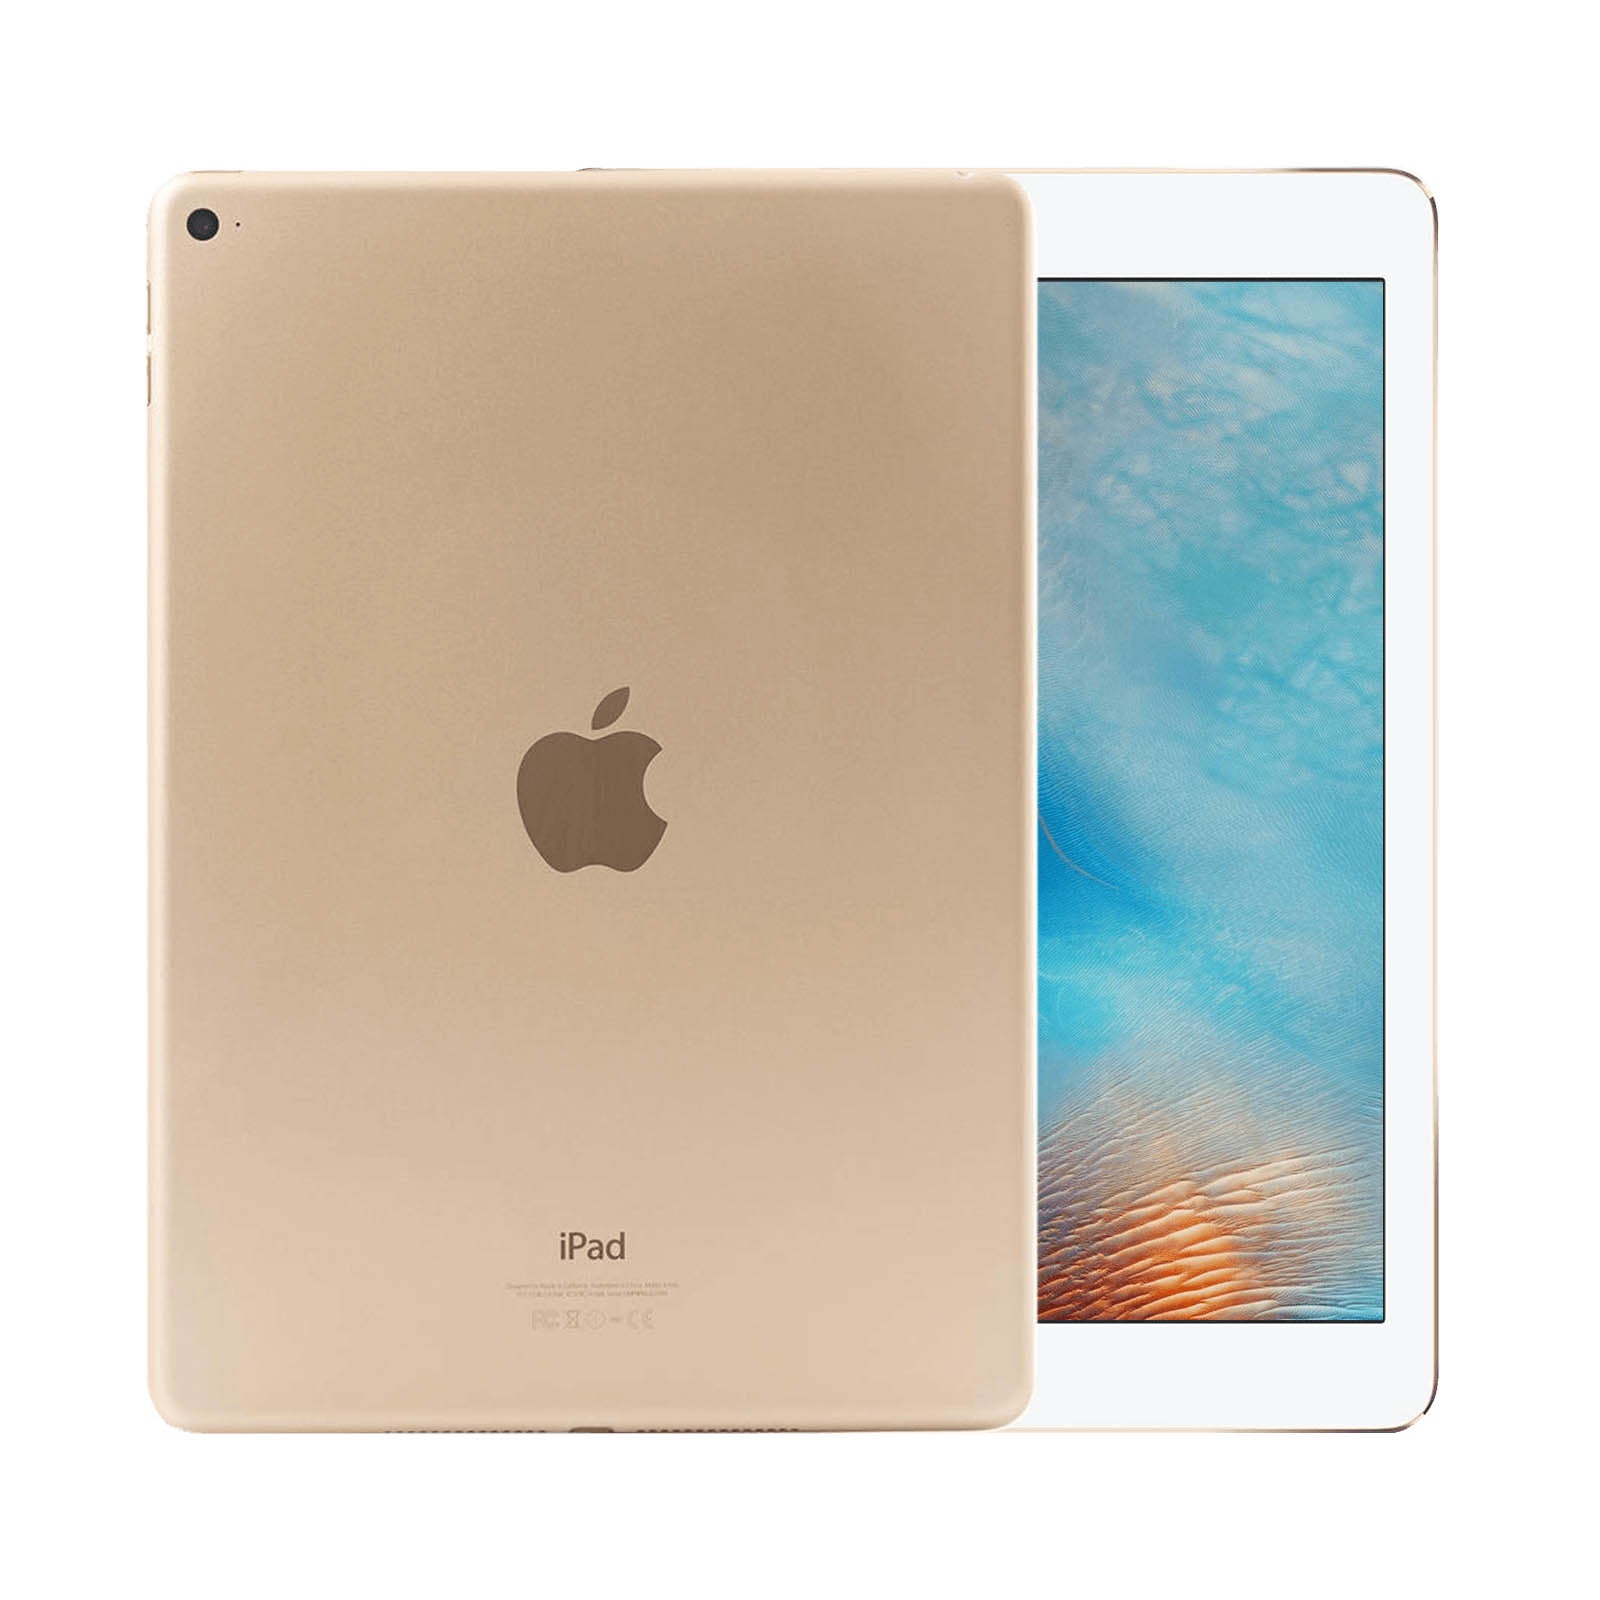 Apple iPad Air 2 128GB Gold Fair - WiFi